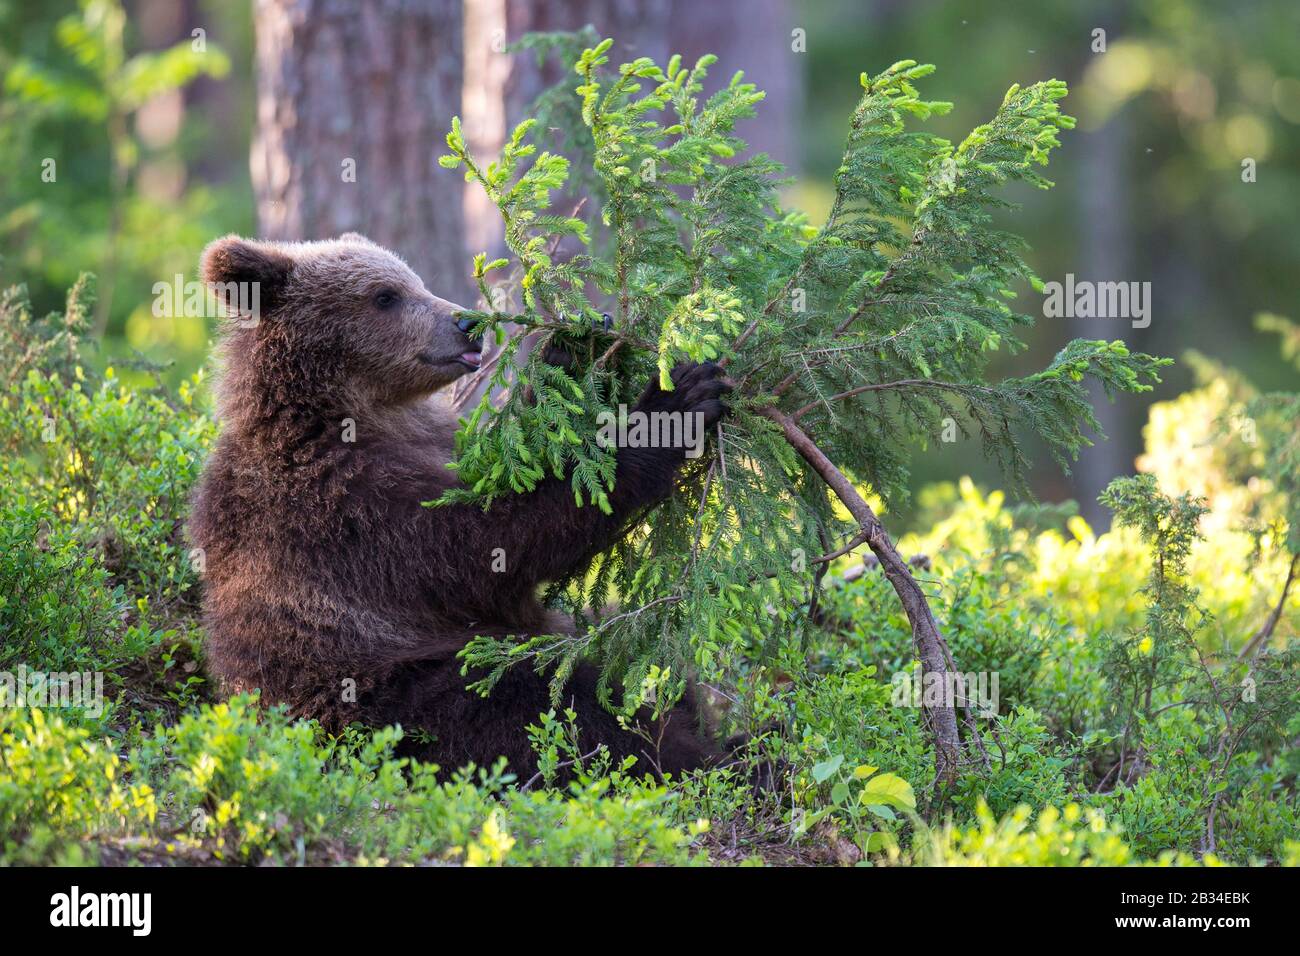 Ours brun européen (Ursus arctos arctos), baer cub jouant avec de jeunes épinettes, Finlande, Carélia, Suomussalmi Banque D'Images